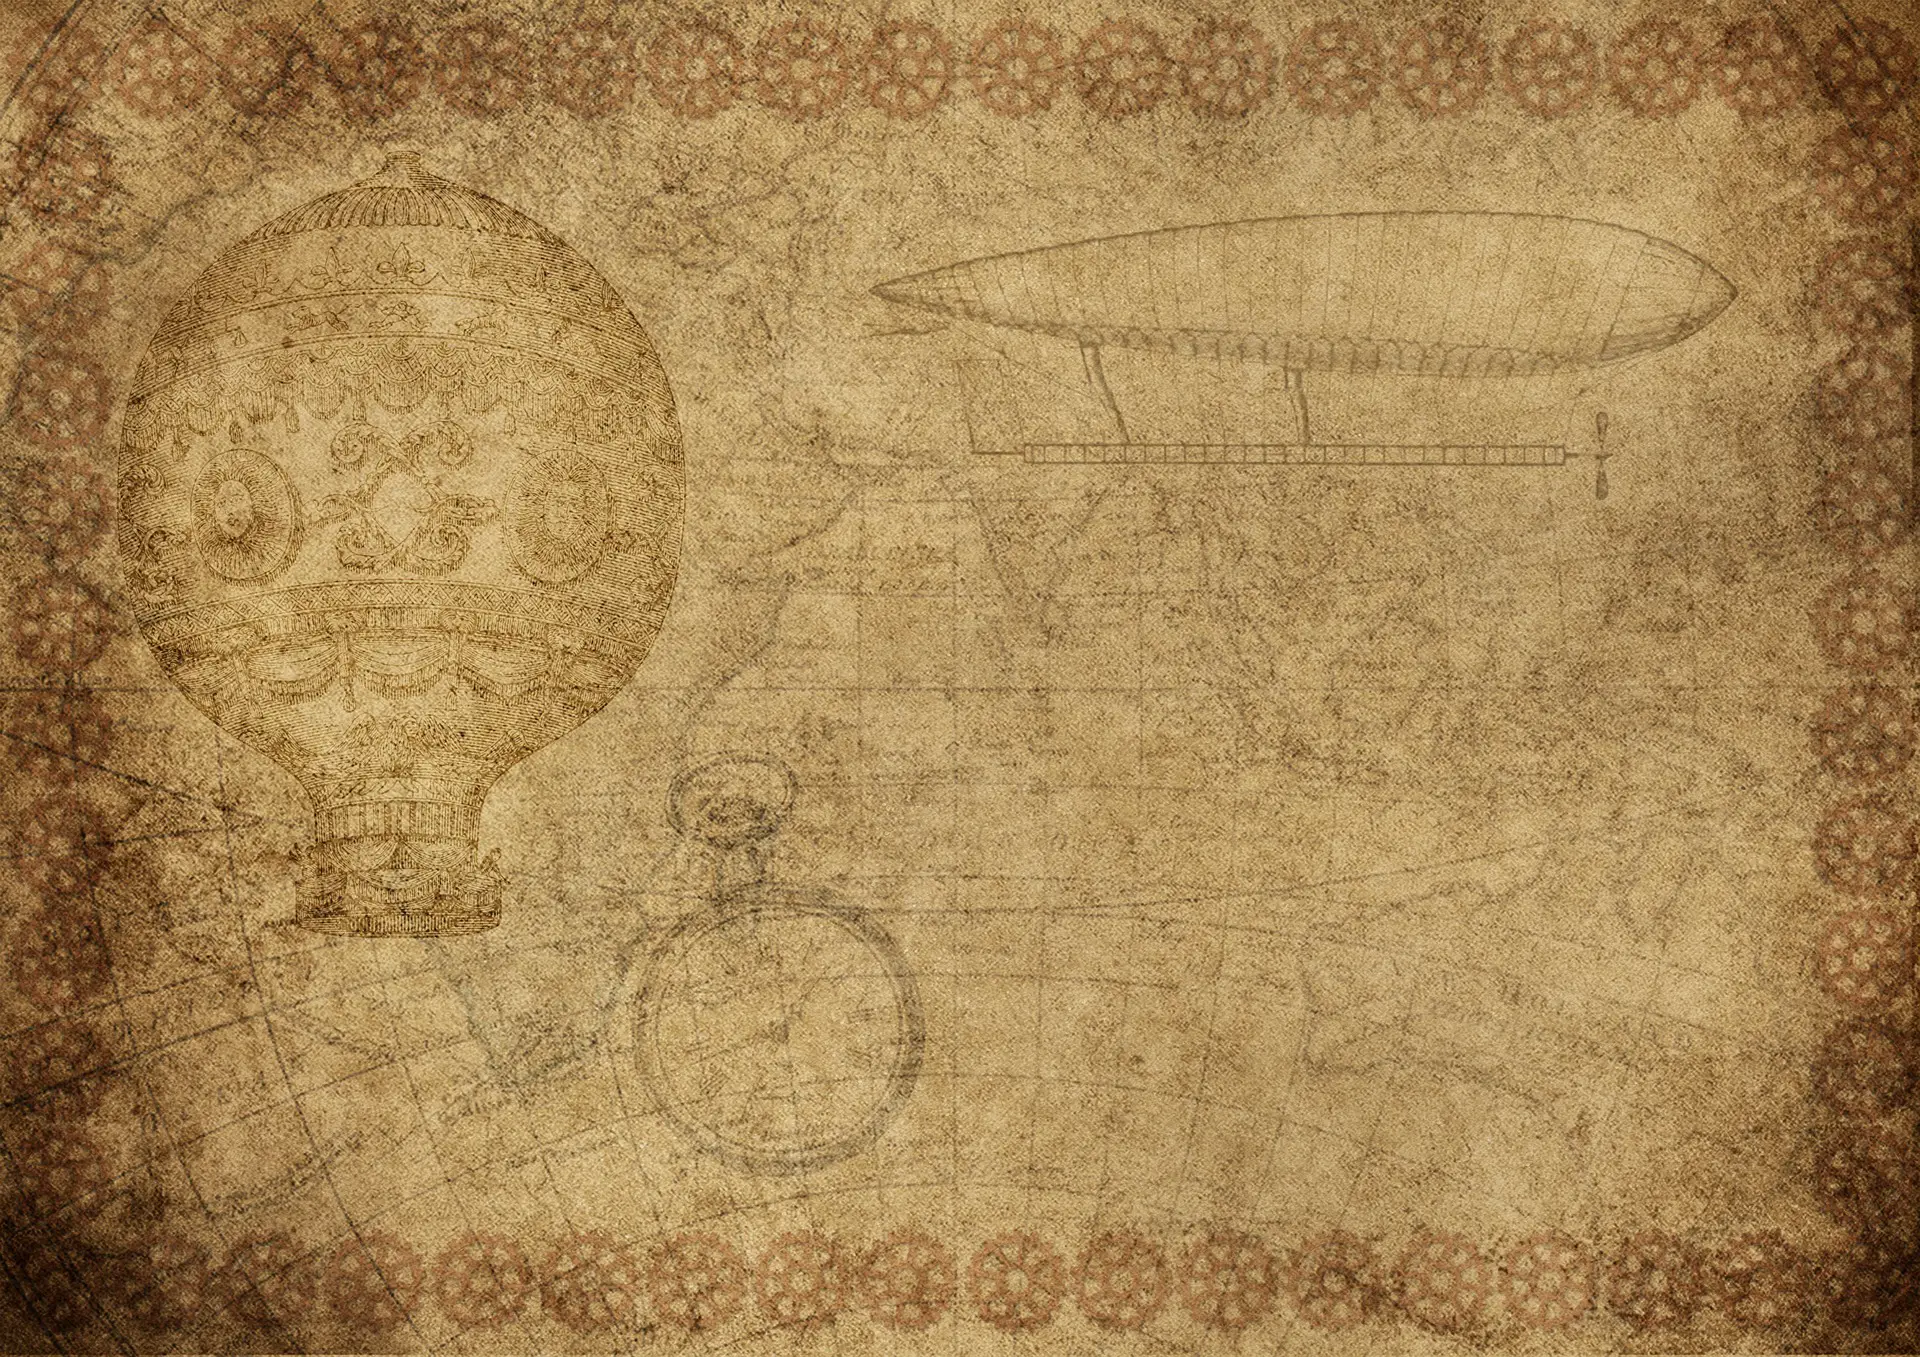 Eine Zeichnung von Leonardo da Vinci mit einem Heißluftballon und einem Zeppelin